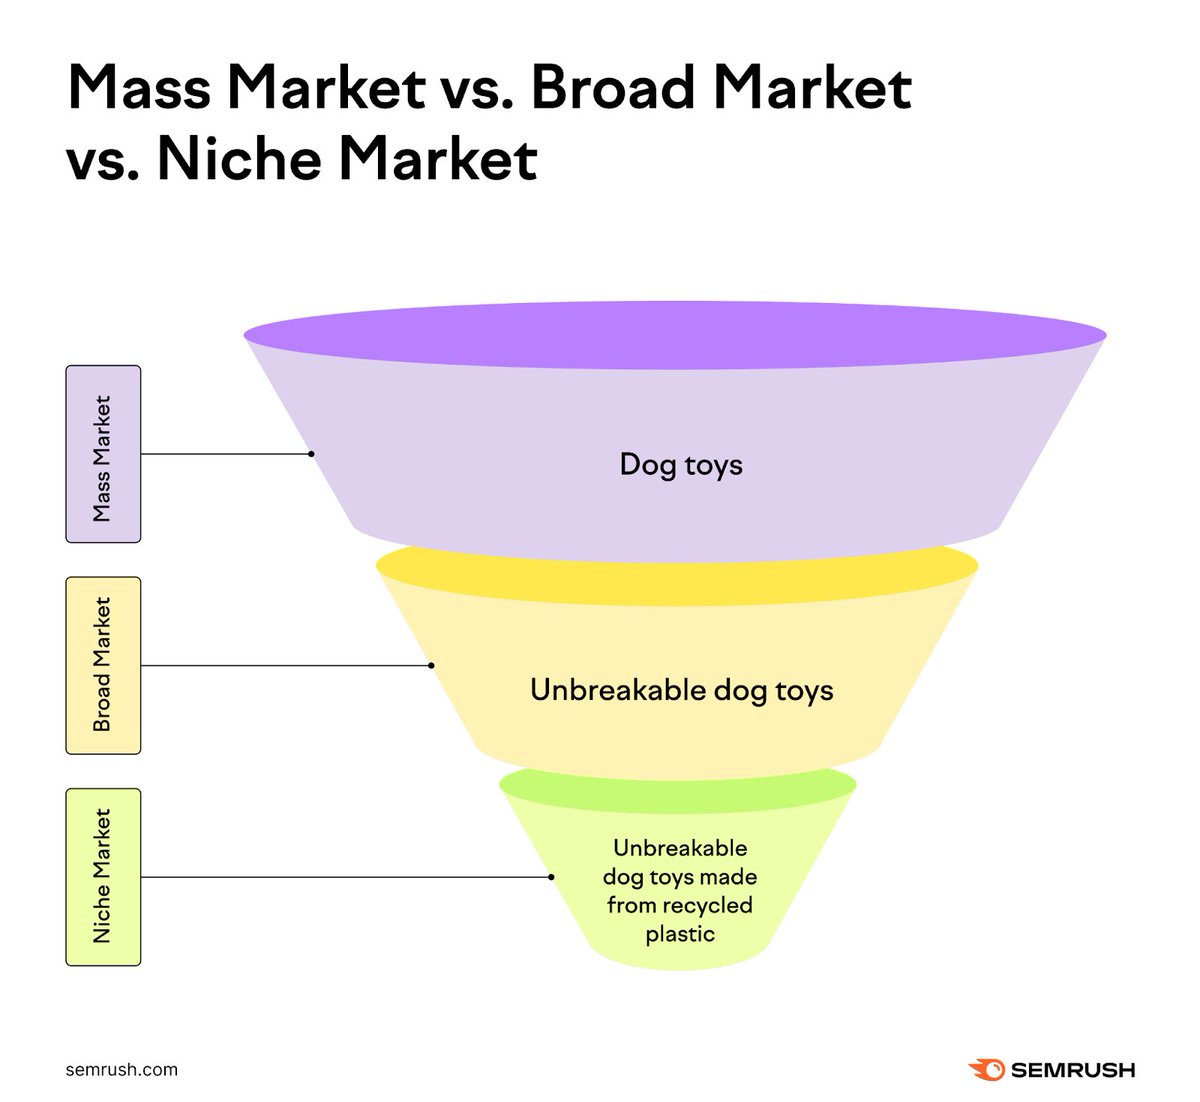 Mass Market VS Broad Market VS Niche Market 📊 via @semrush #Marketing